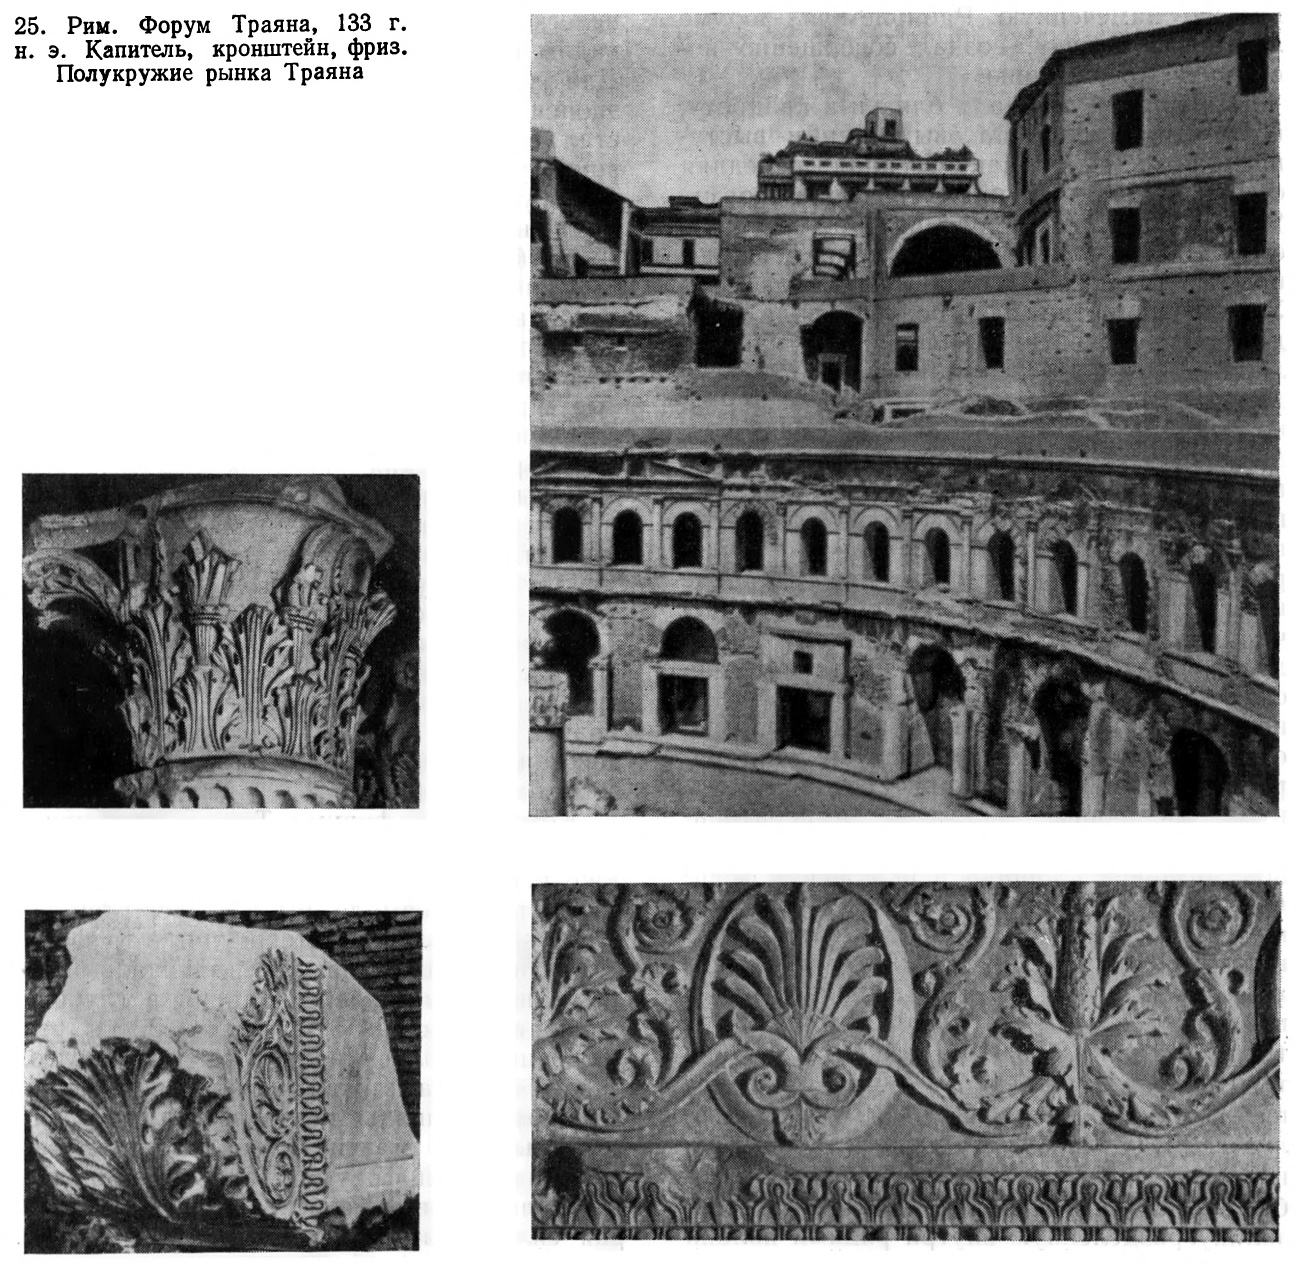 25. Рим. Форум Траяна, 133 г. н. э. Капитель, кронштейн, фриз. Полукружие рынка Траяна